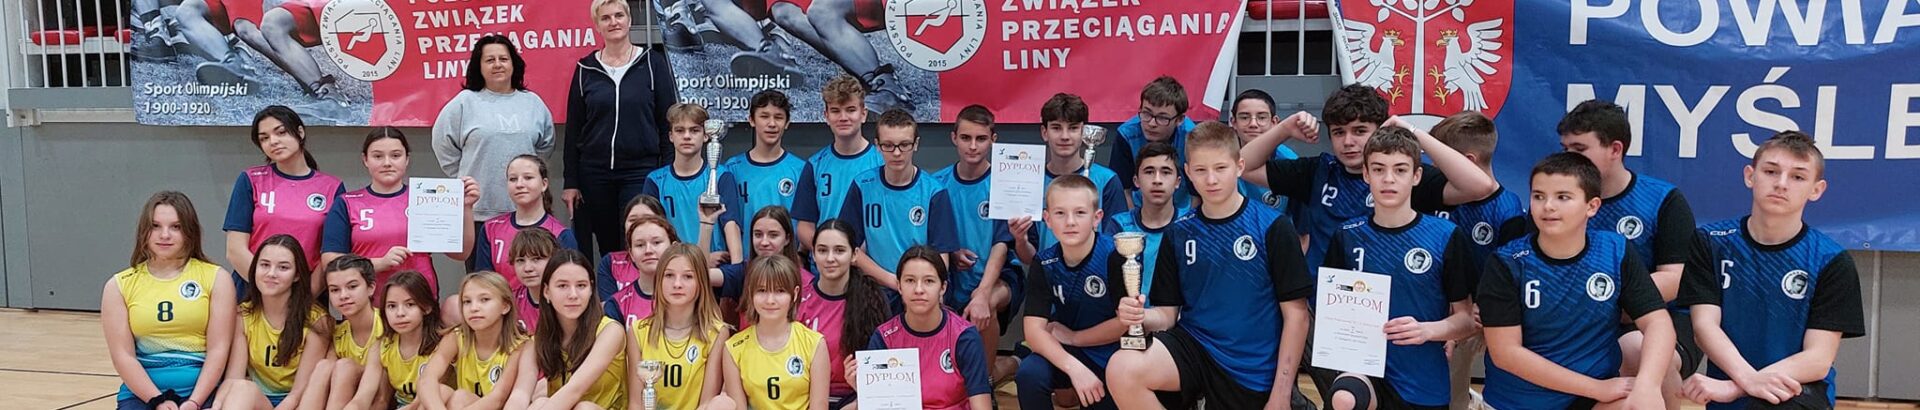 Małopolskie Igrzyska Dzieci i Młodzieży w Przeciąganiu Liny